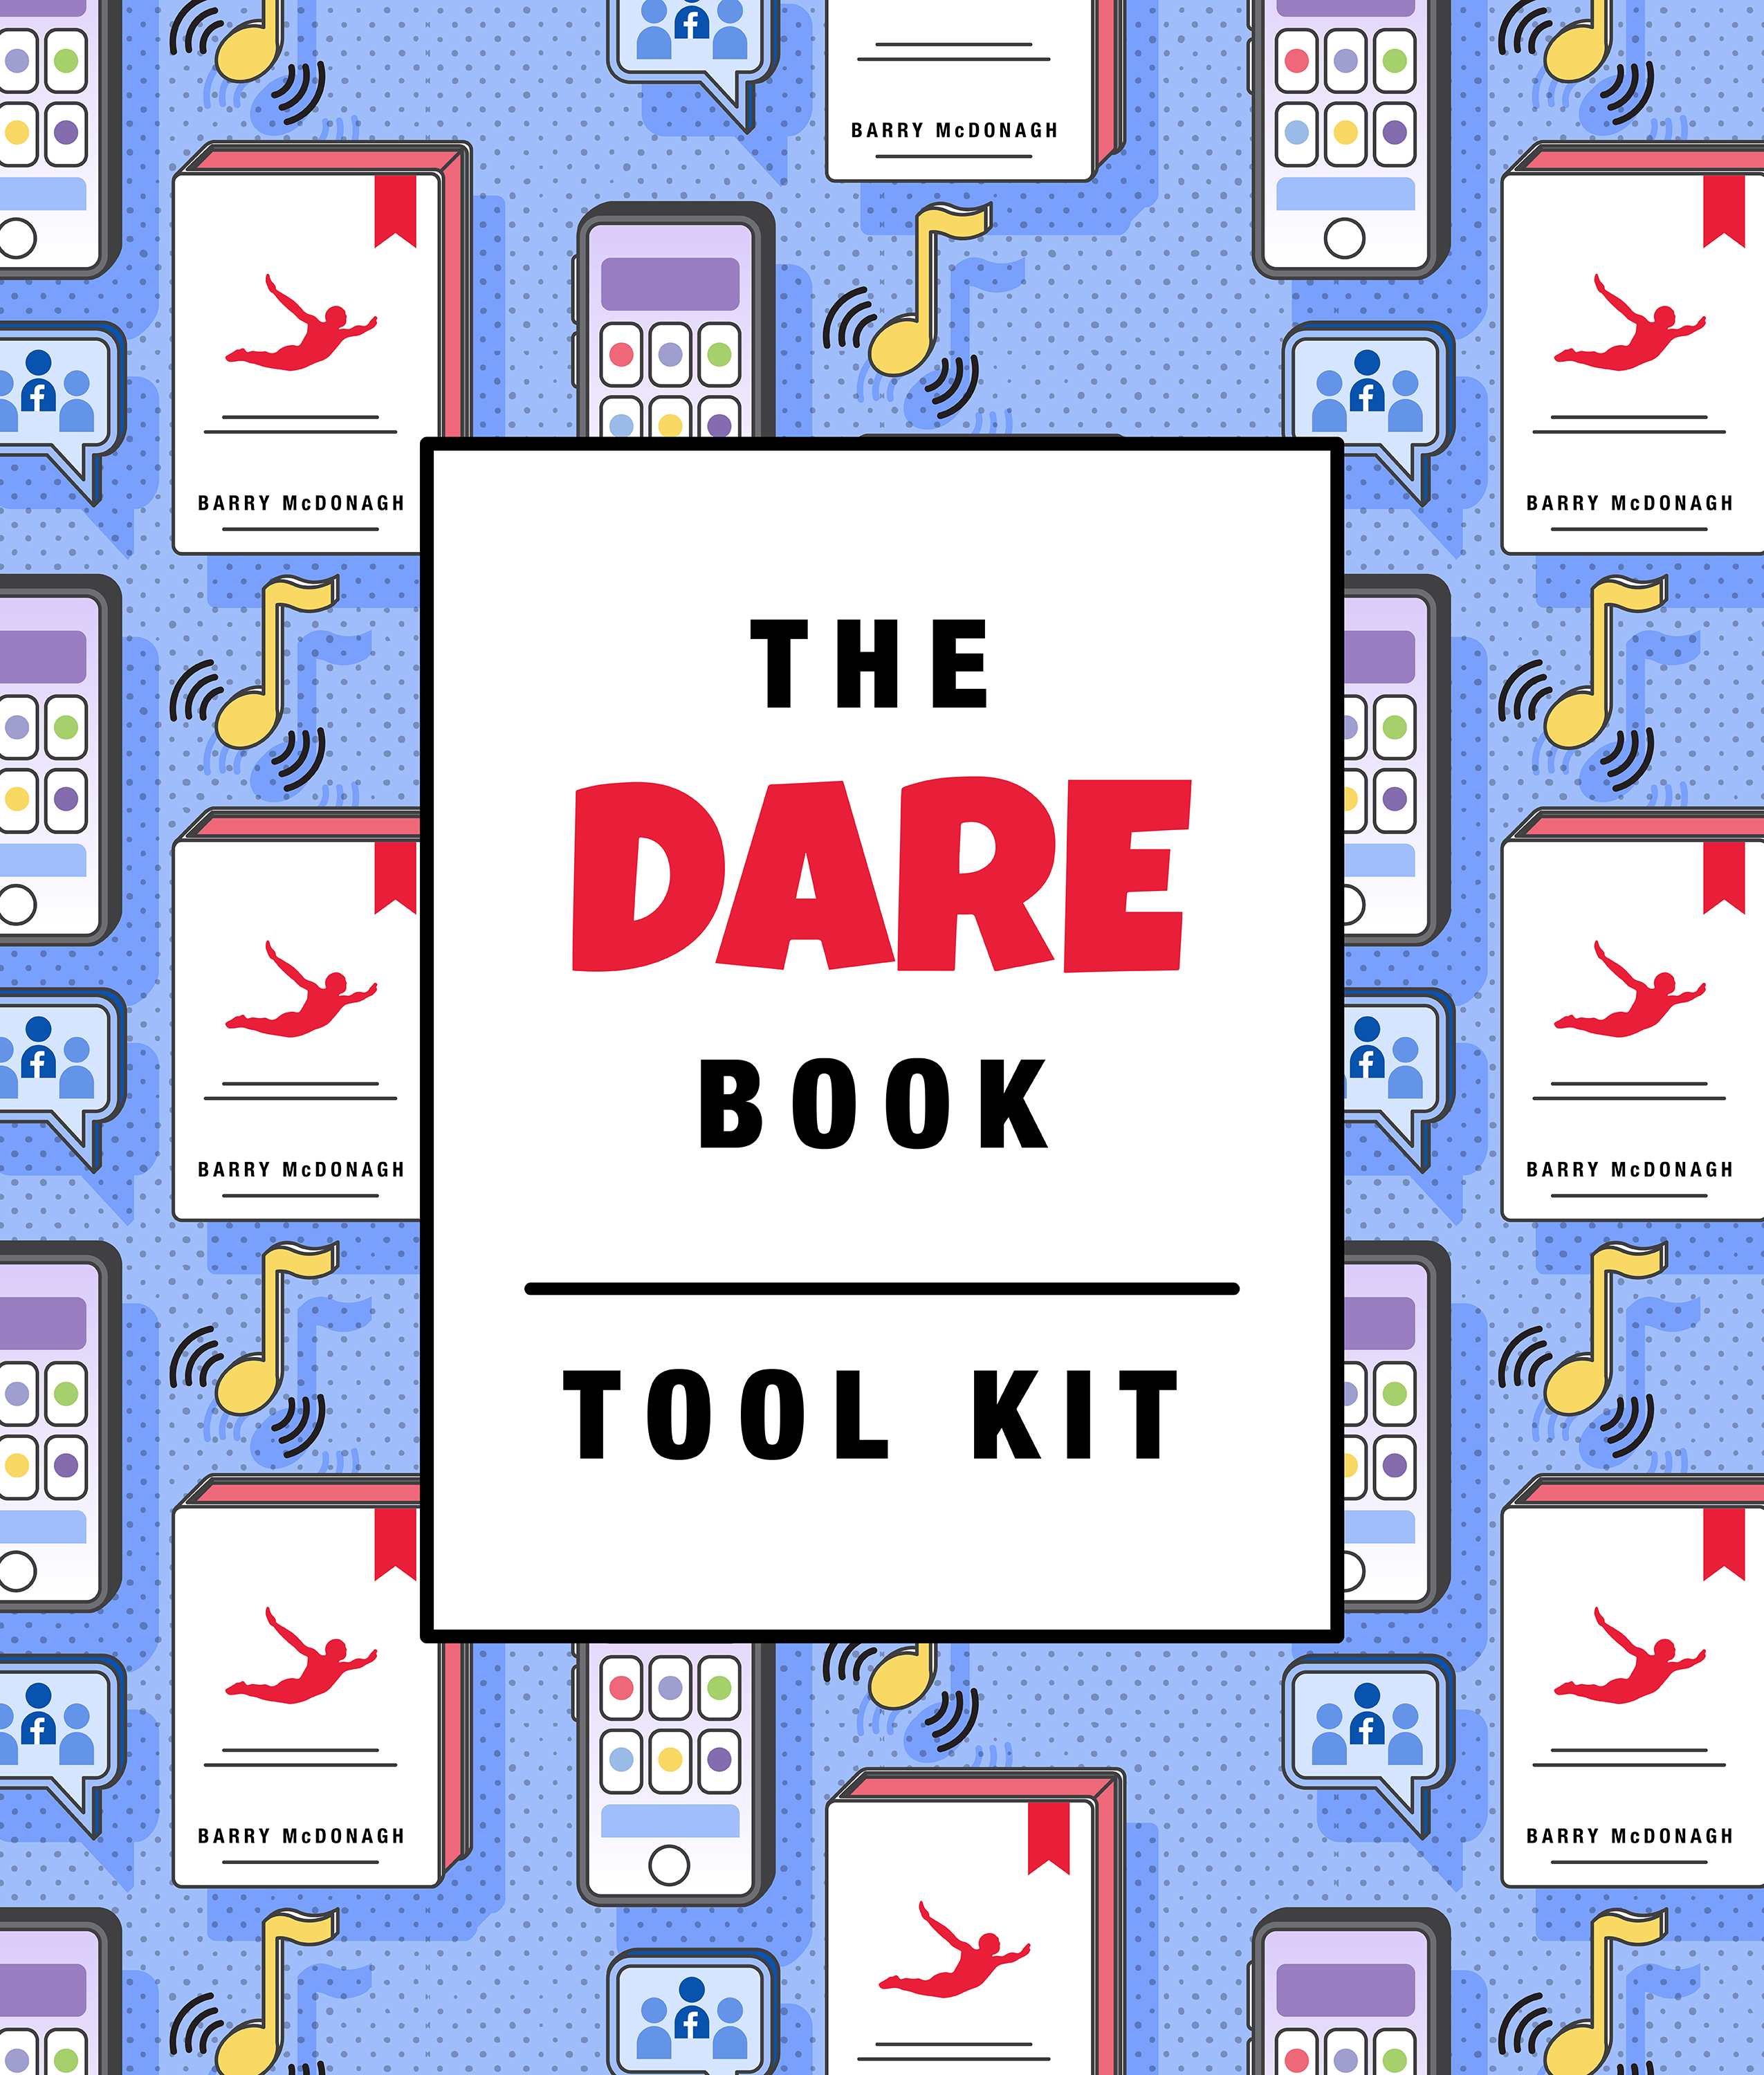 Dare Tool Kit Dare Response